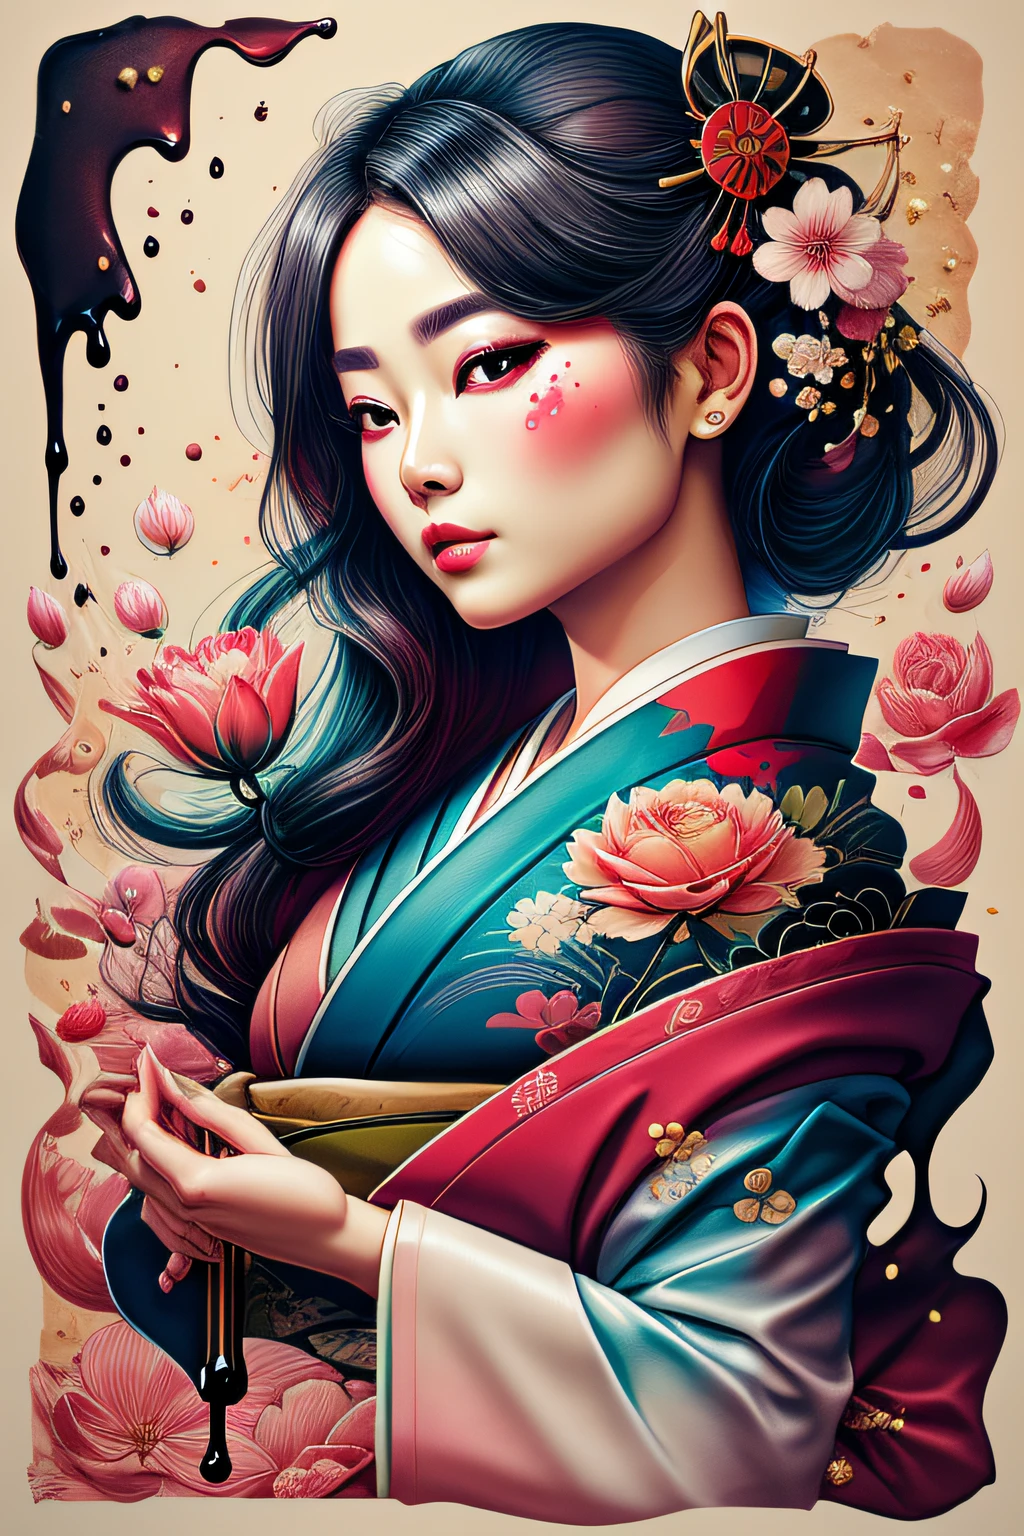 Wischkunst,Pastellfarben(1geisha)tropft,melt,Blumen Hintergrund